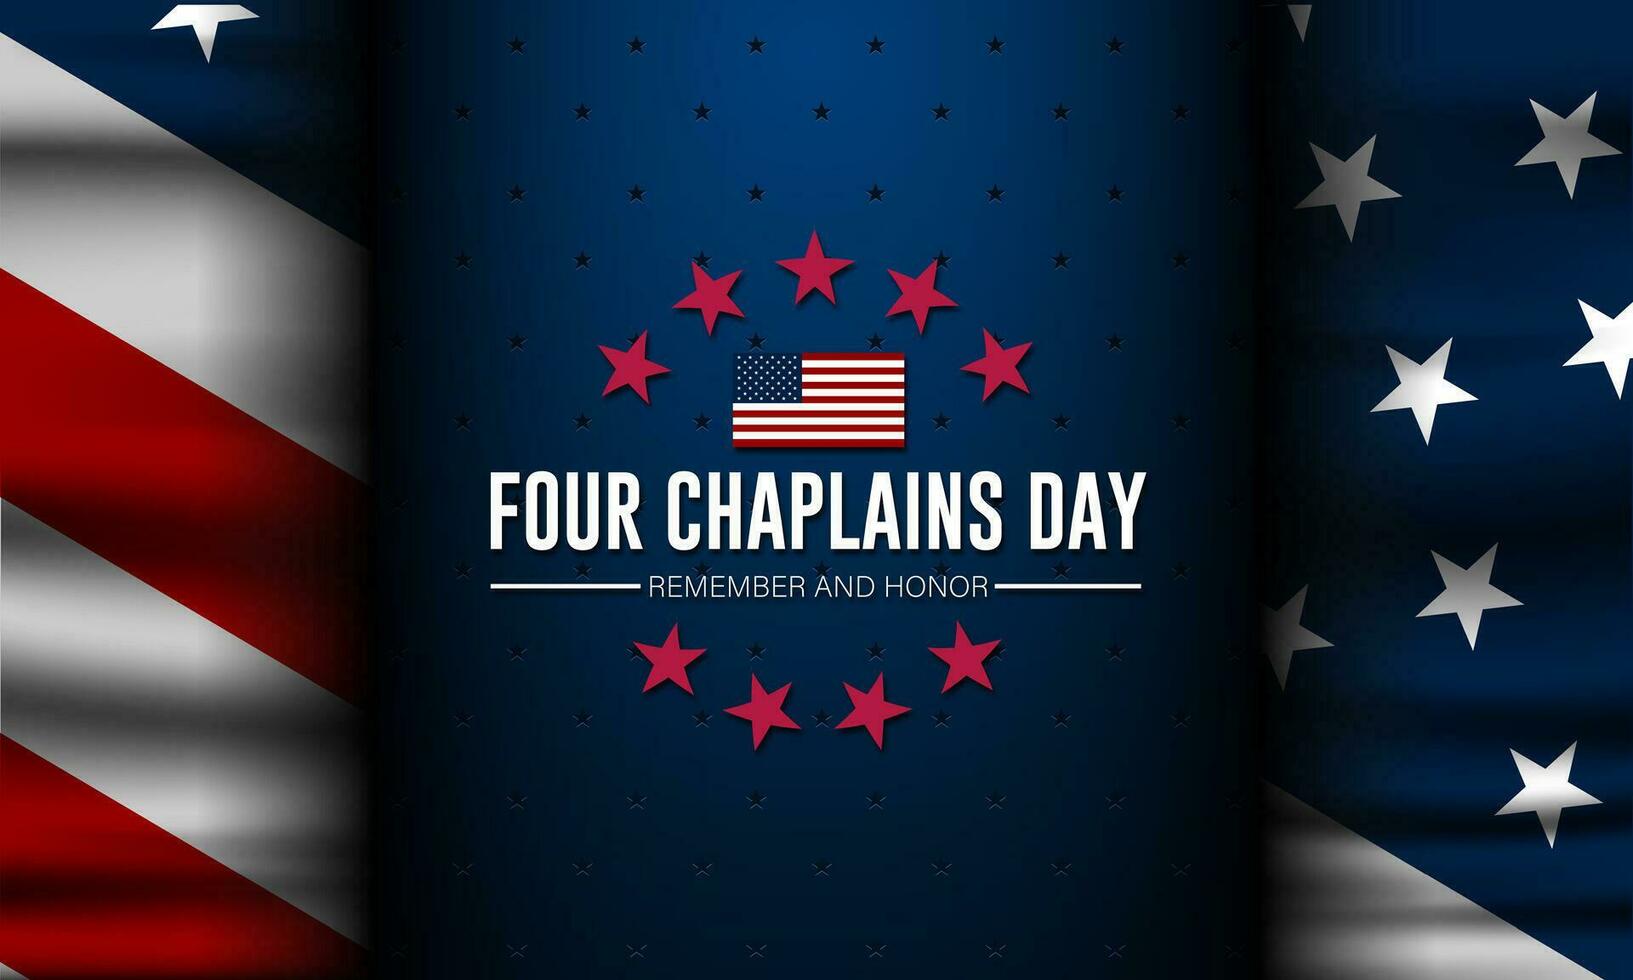 vier kapelaans dag februari 03 achtergrond vector illustratie